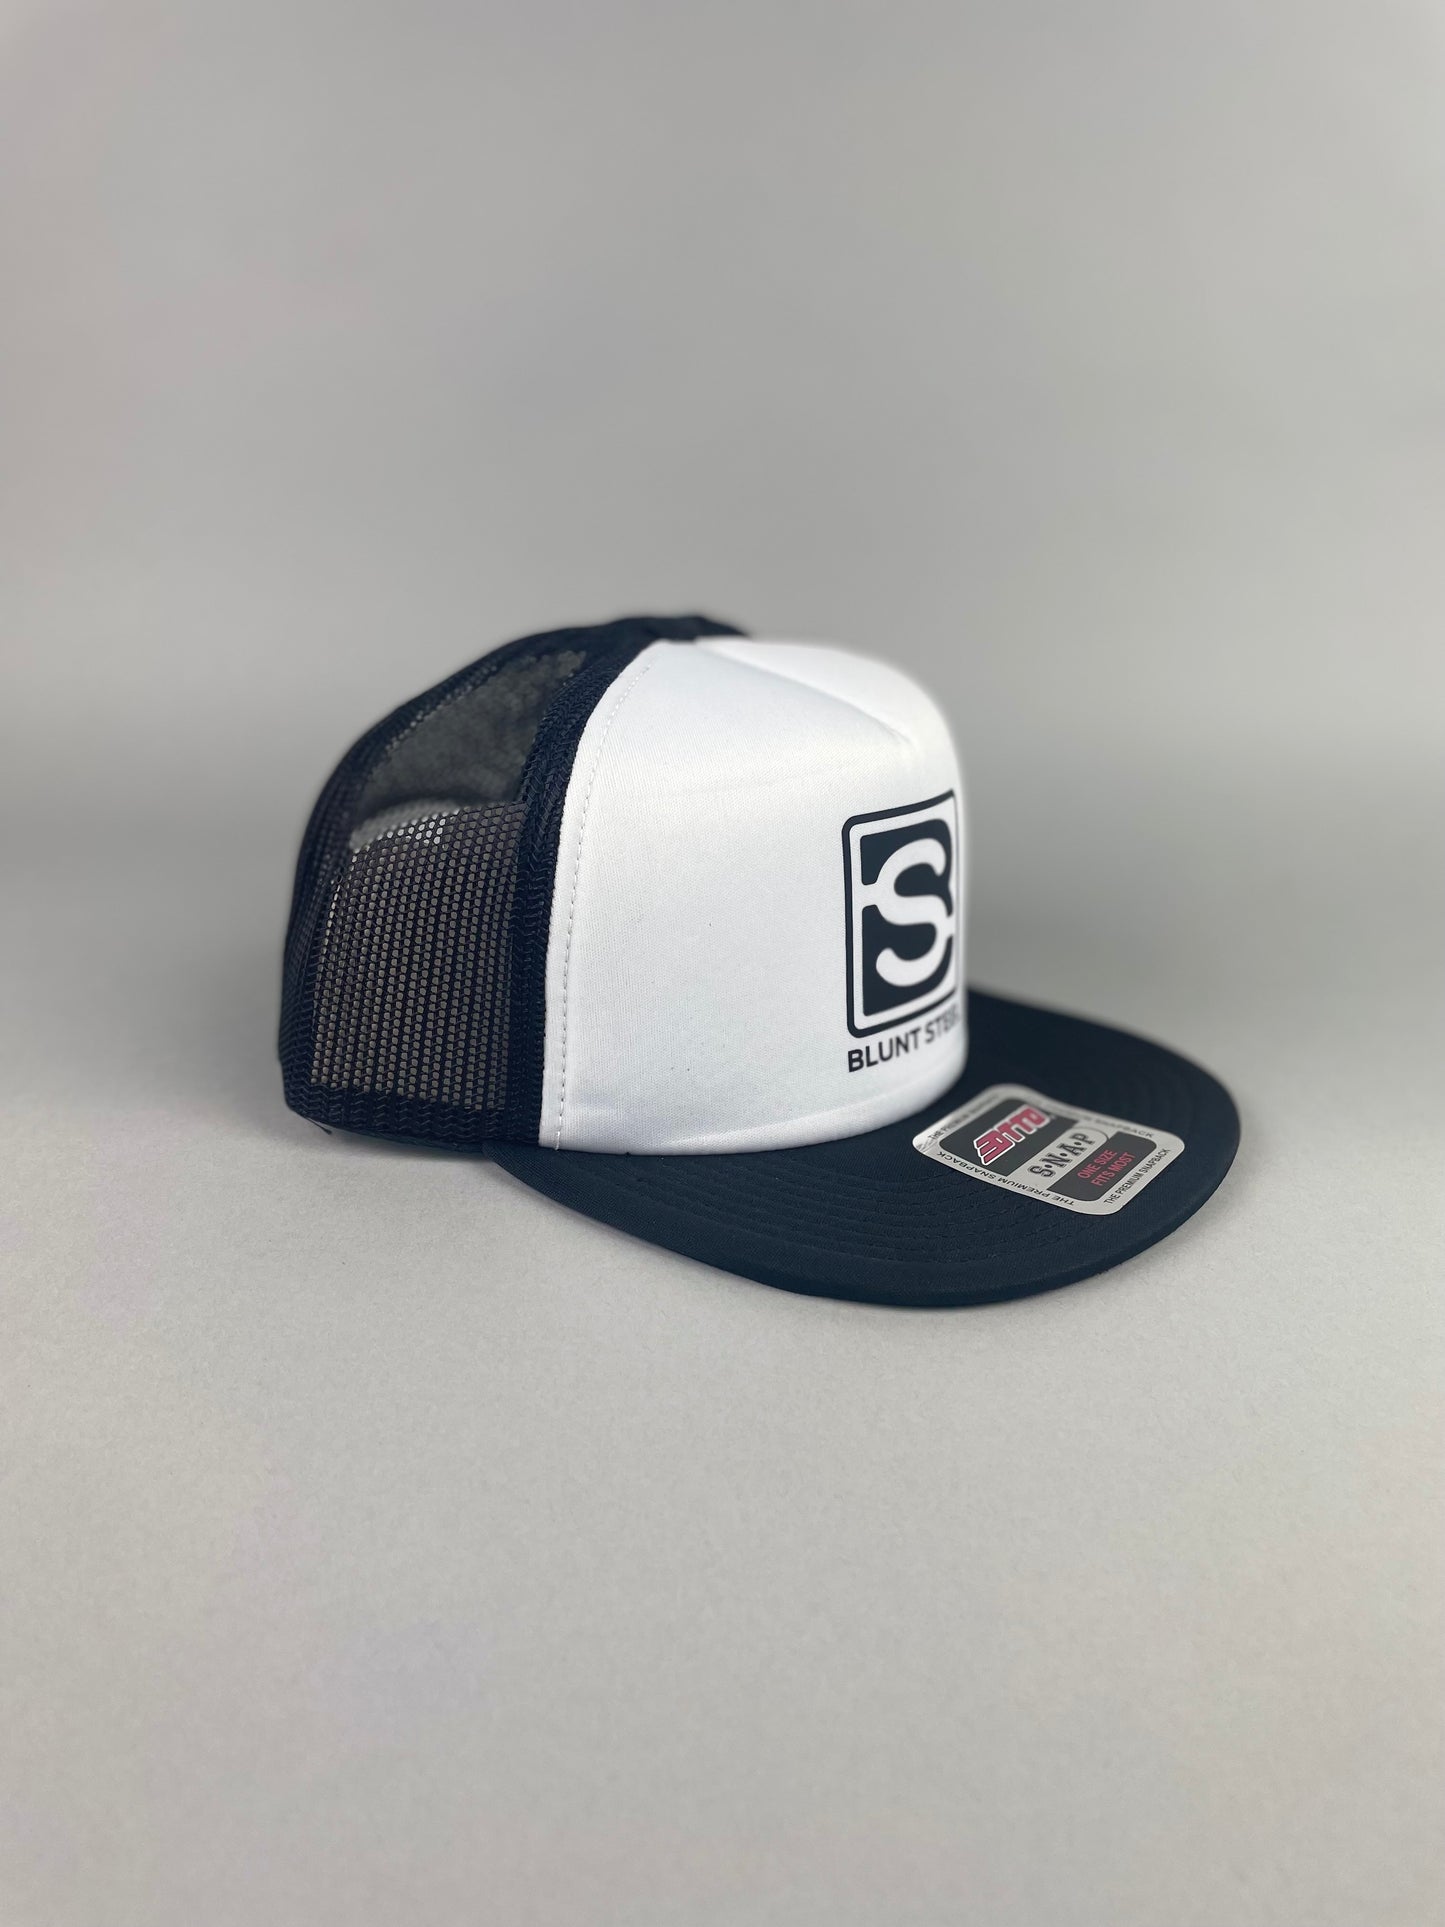 Blunt Steel “Amp” Trucker Hat